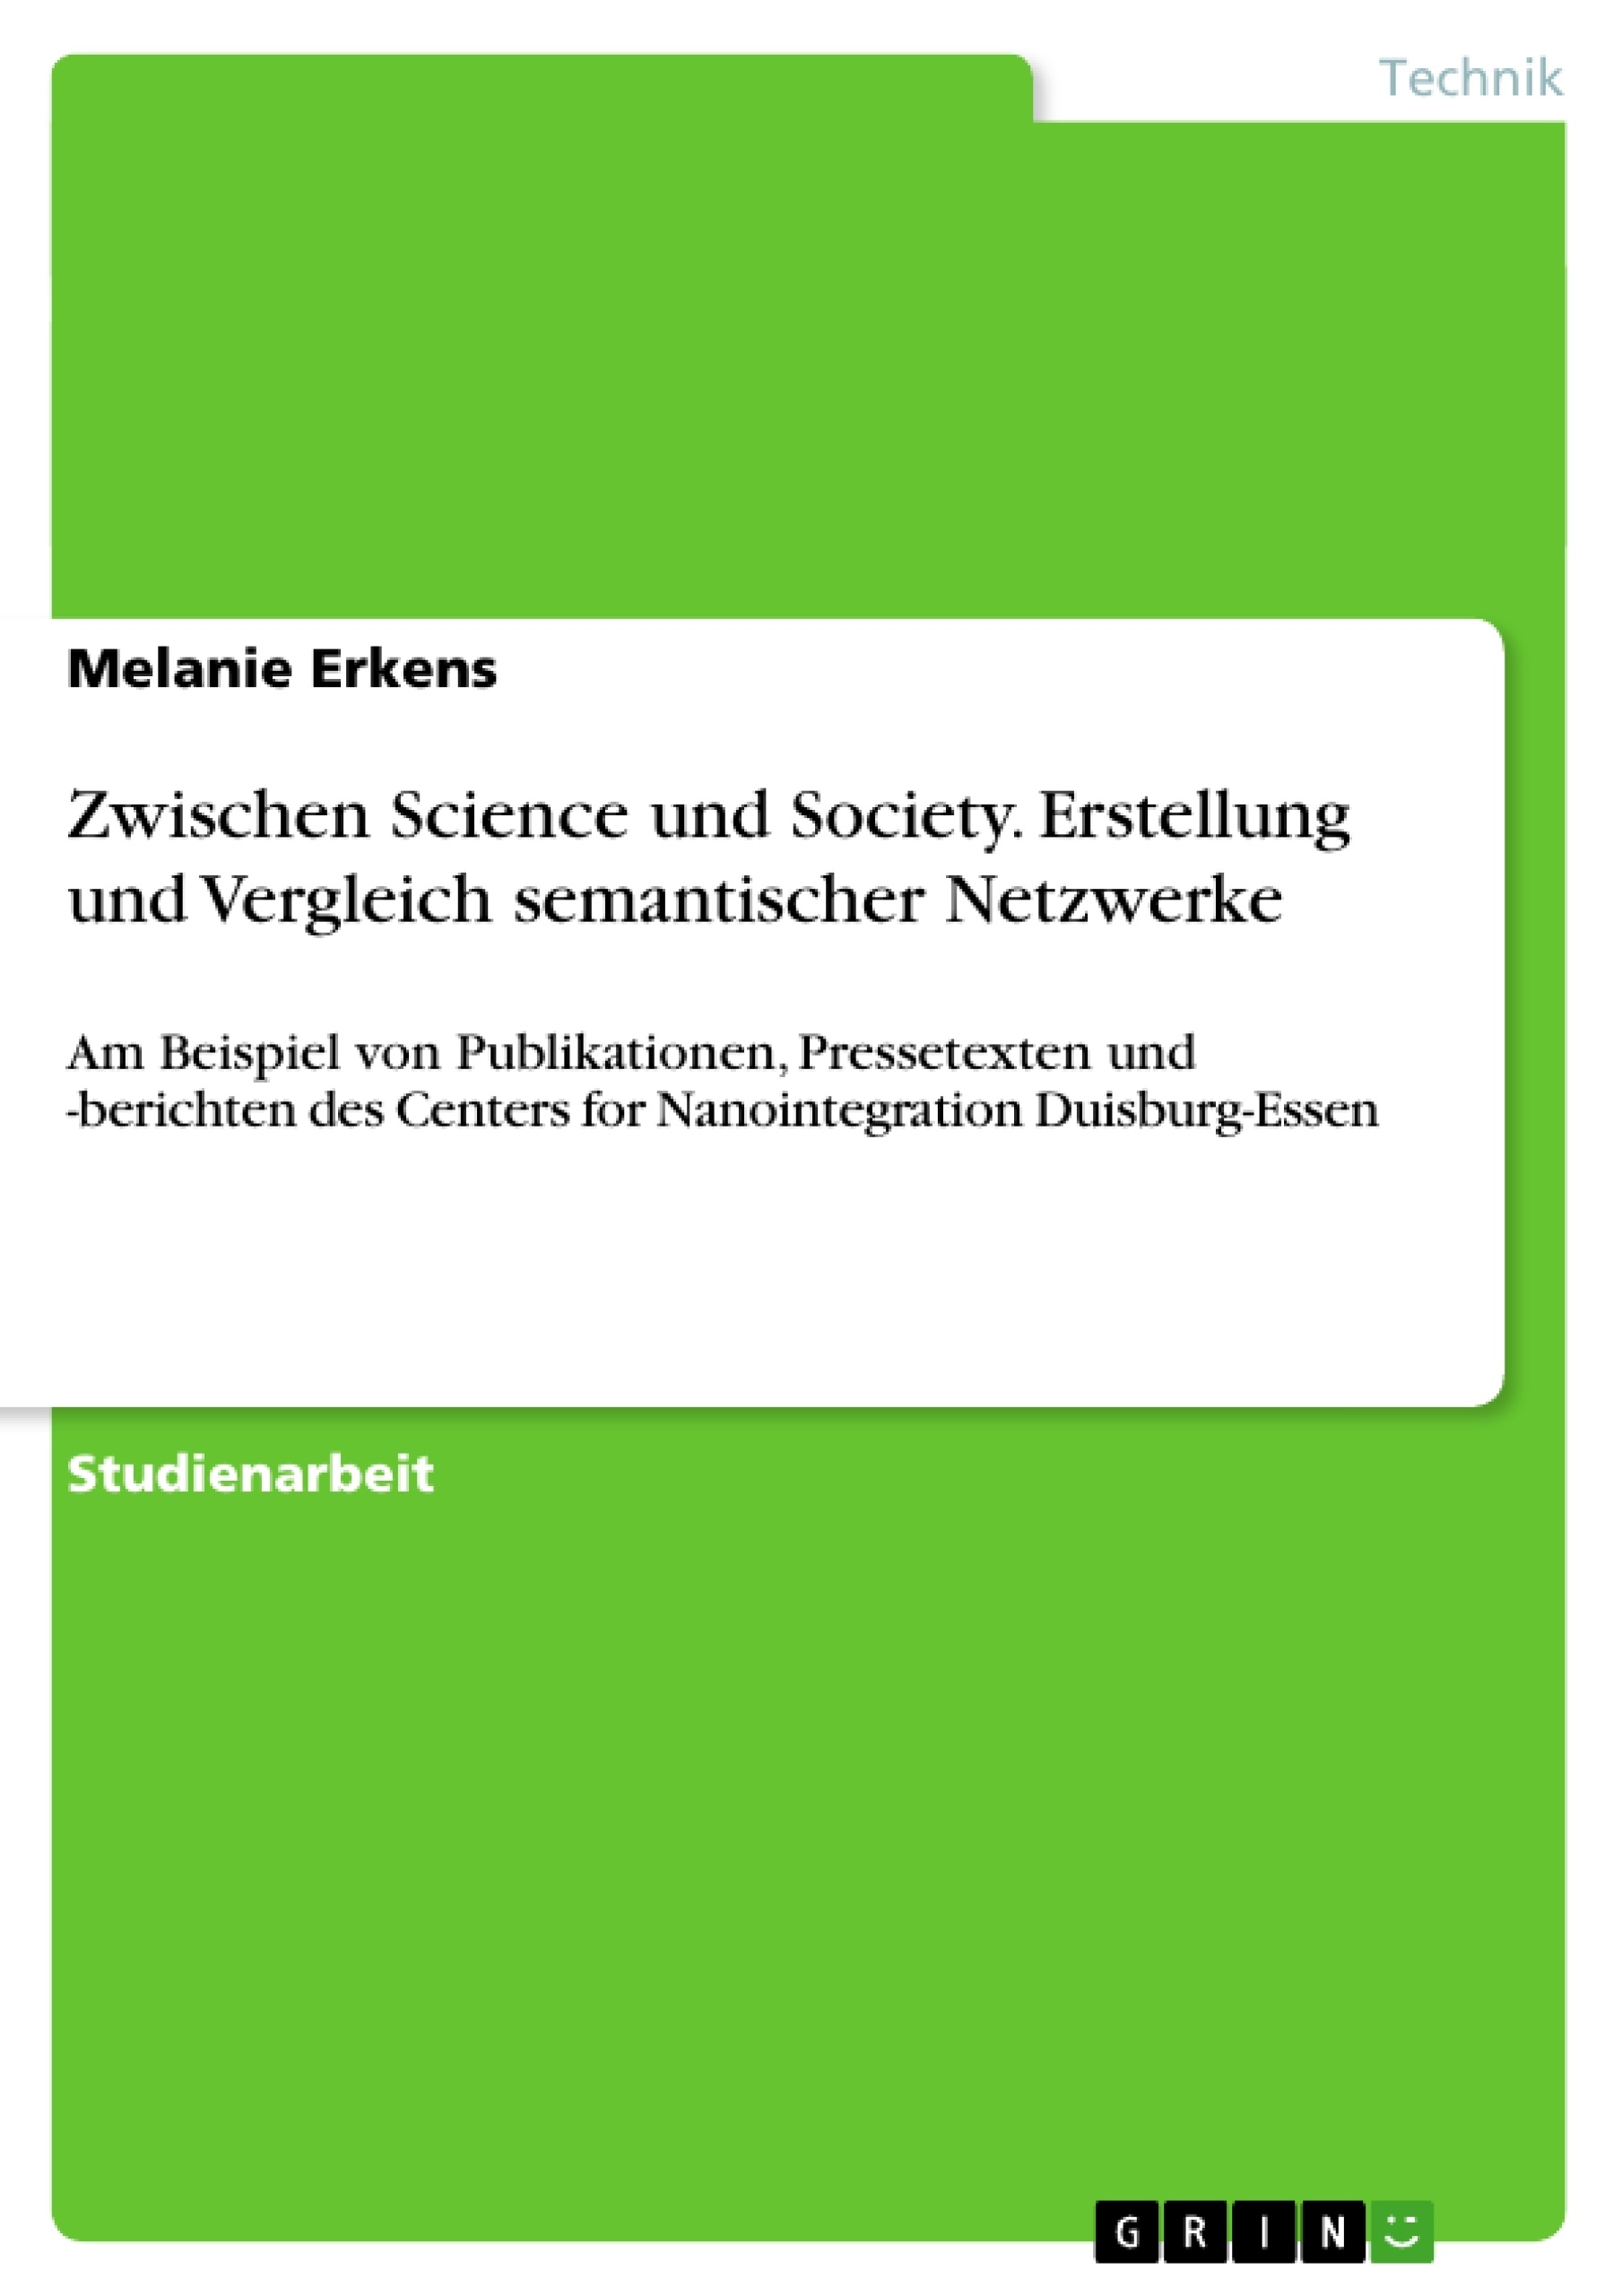 Título: Zwischen Science und Society. Erstellung und Vergleich semantischer Netzwerke